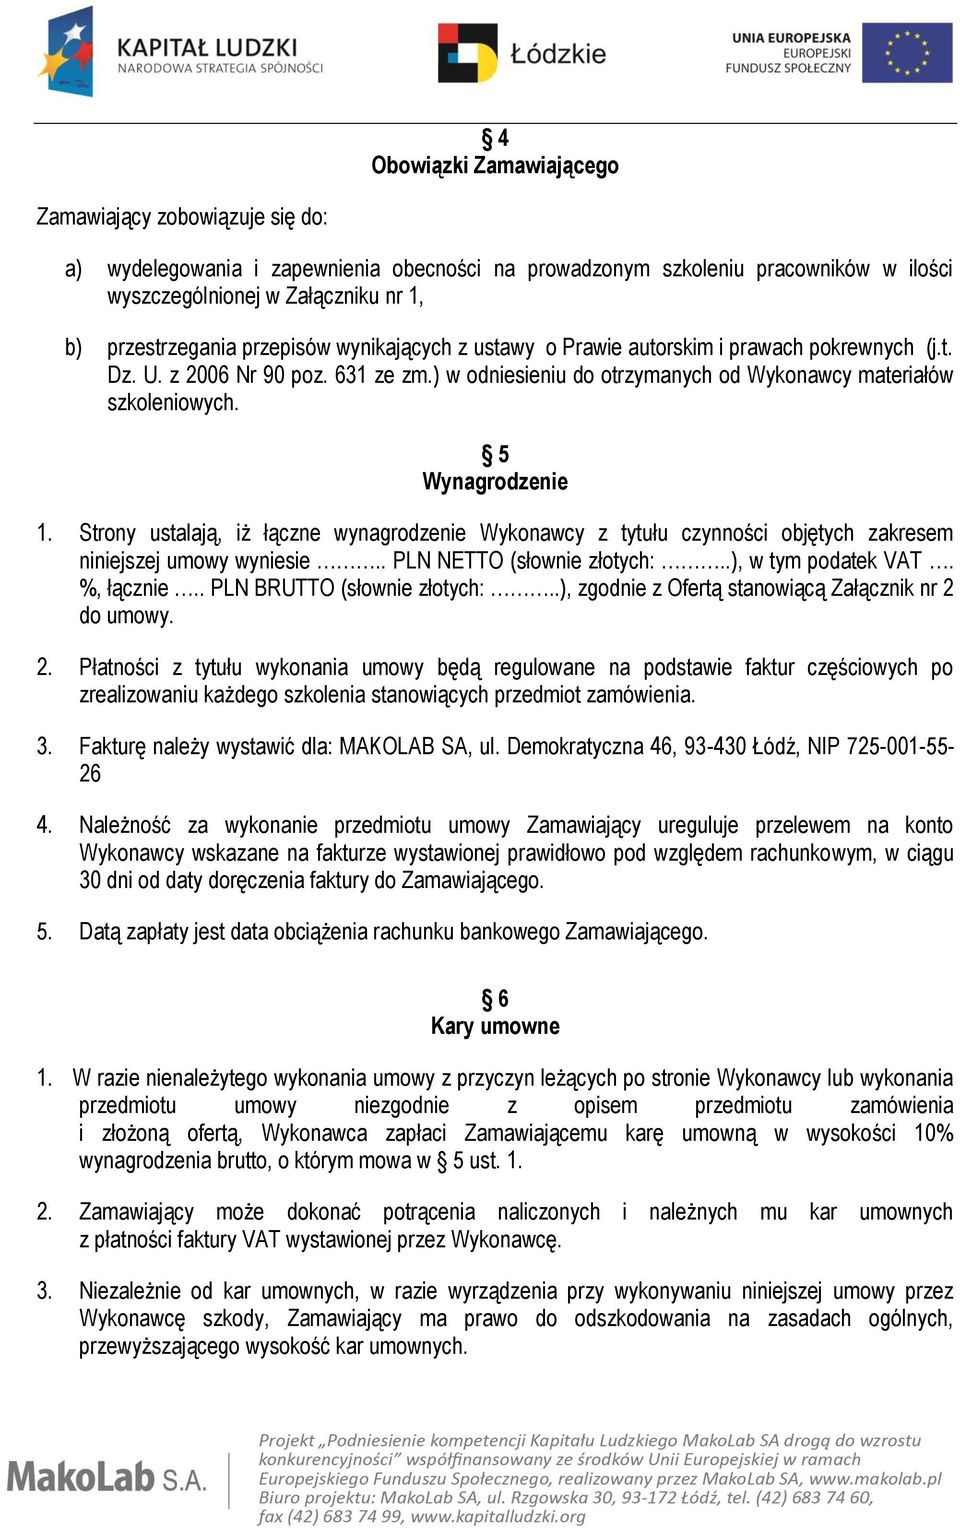 5 Wynagrodzenie 1. Strony ustalają, iż łączne wynagrodzenie Wykonawcy z tytułu czynności objętych zakresem niniejszej umowy wyniesie.. PLN NETTO (słownie złotych:..), w tym podatek VAT. %, łącznie.